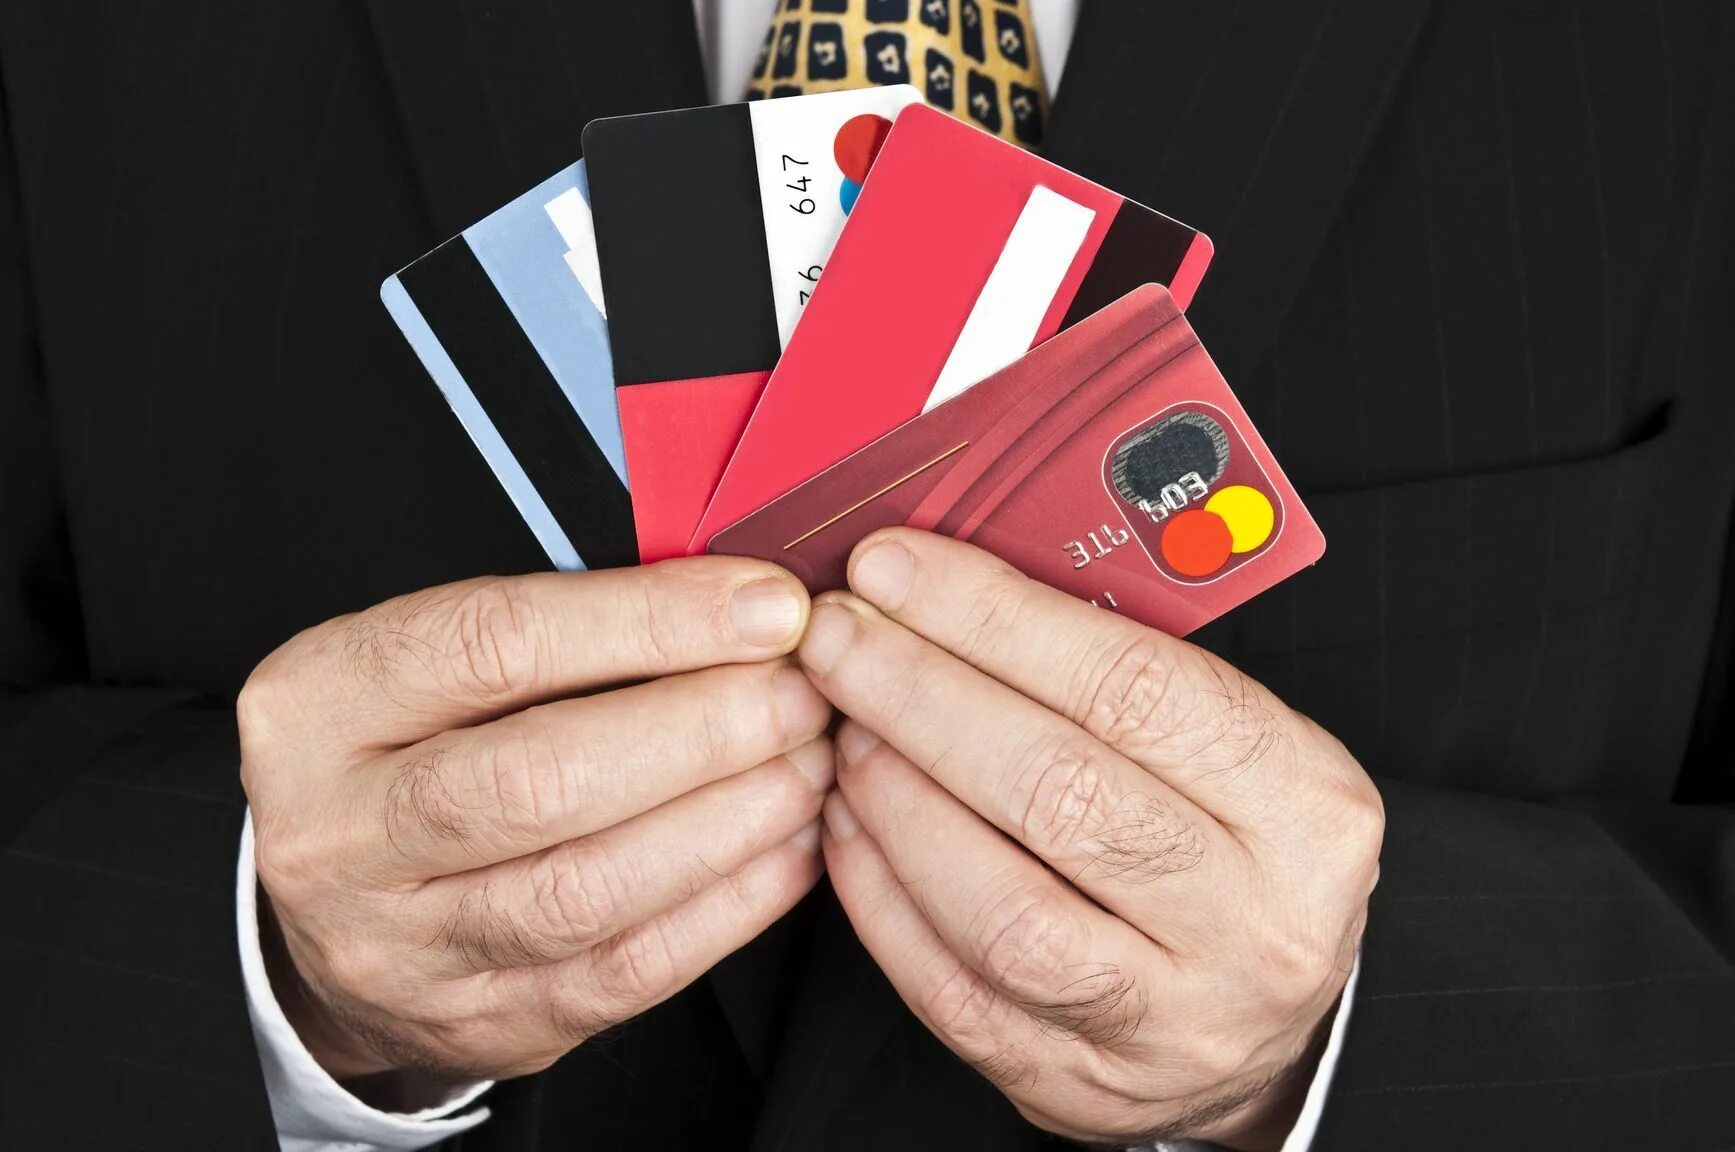 Получение кредиток. Кредитная карта в руке. Банковская карточка в руке. Пластиковая карта в руке. Рука держит банковскую карту.